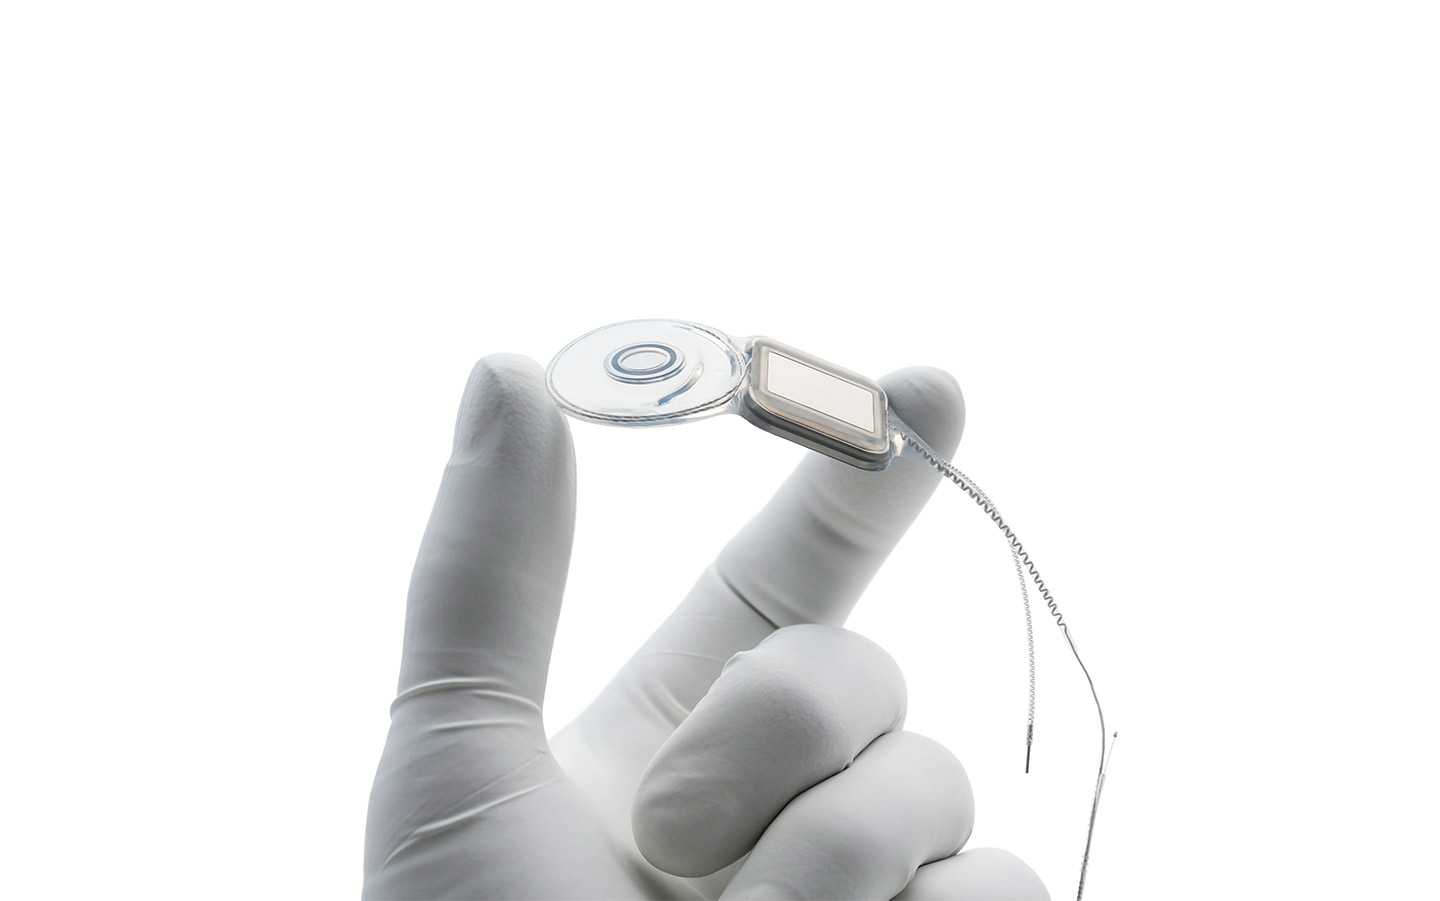 De hand van een chirurg met een latexhandschoen die een Nucleus-implantaat vasthoudt